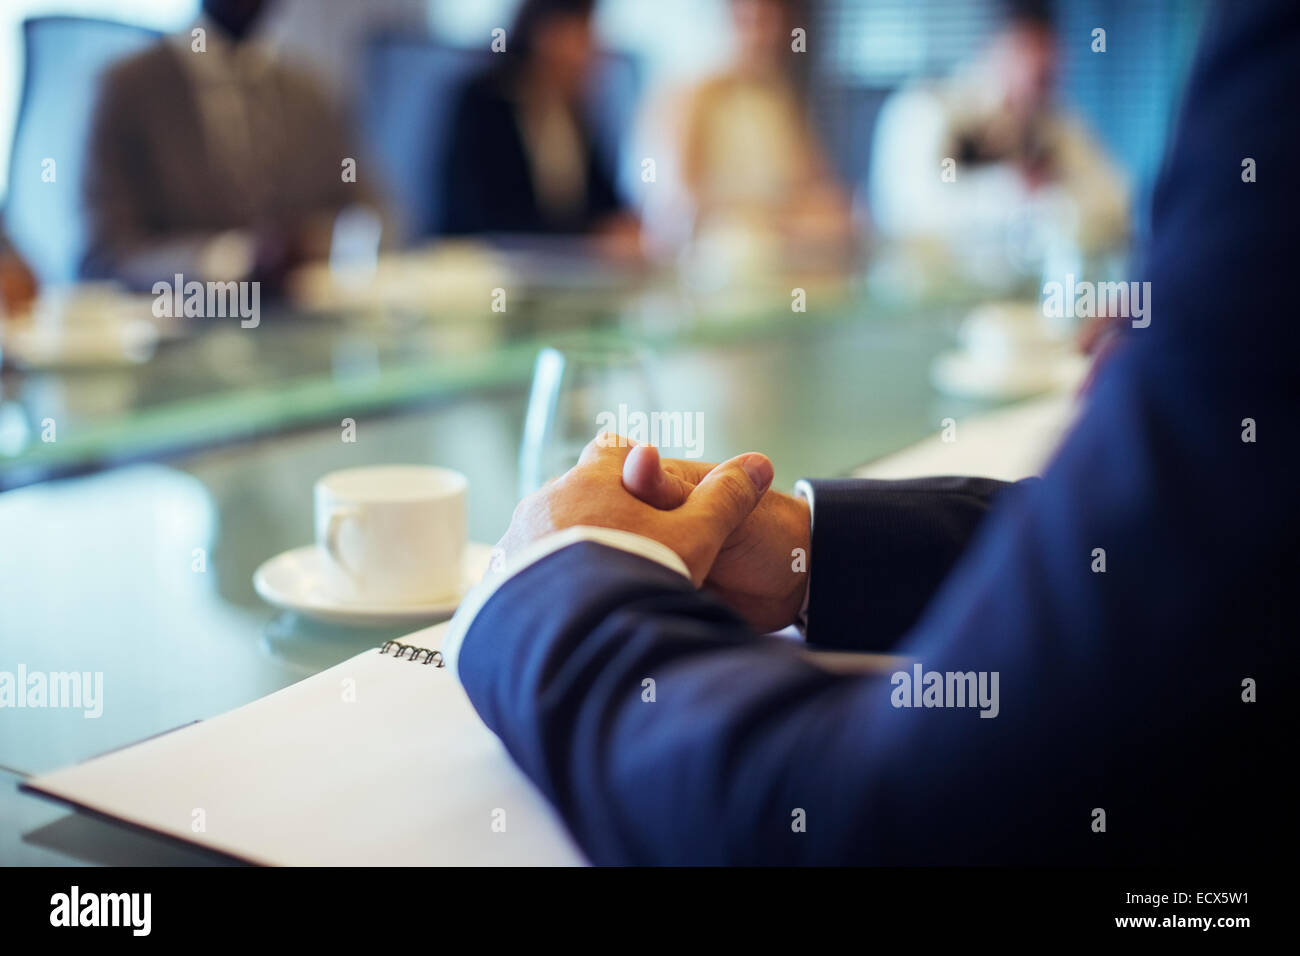 Businessman sitting at conference table dans la salle de conférence avec les mains jointes Banque D'Images